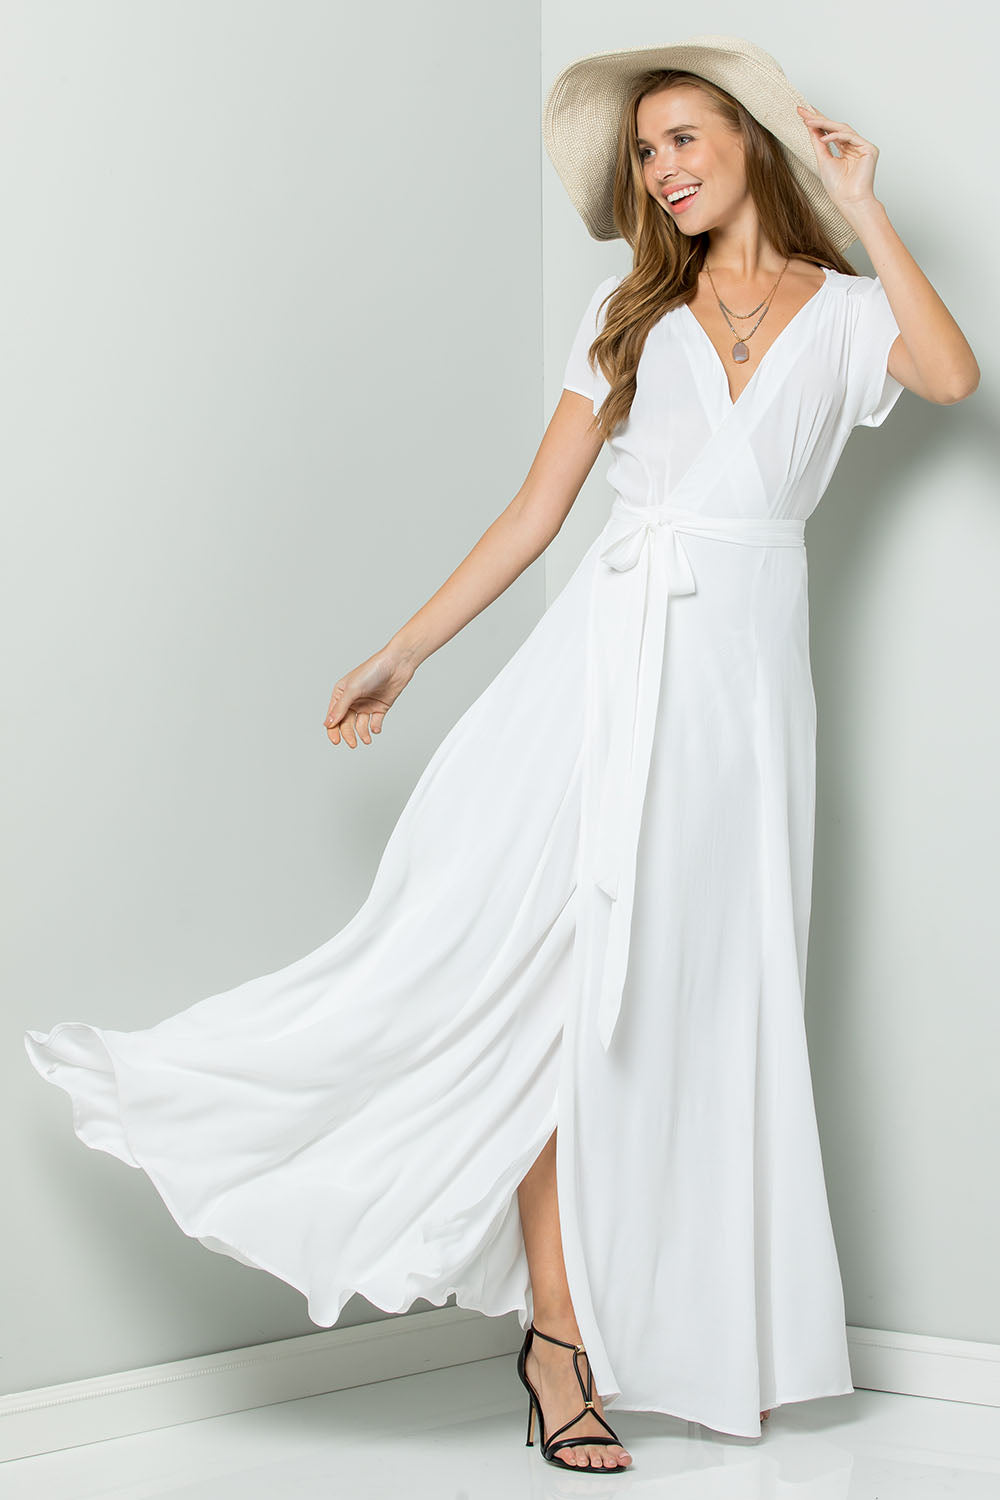 white long wrap dress